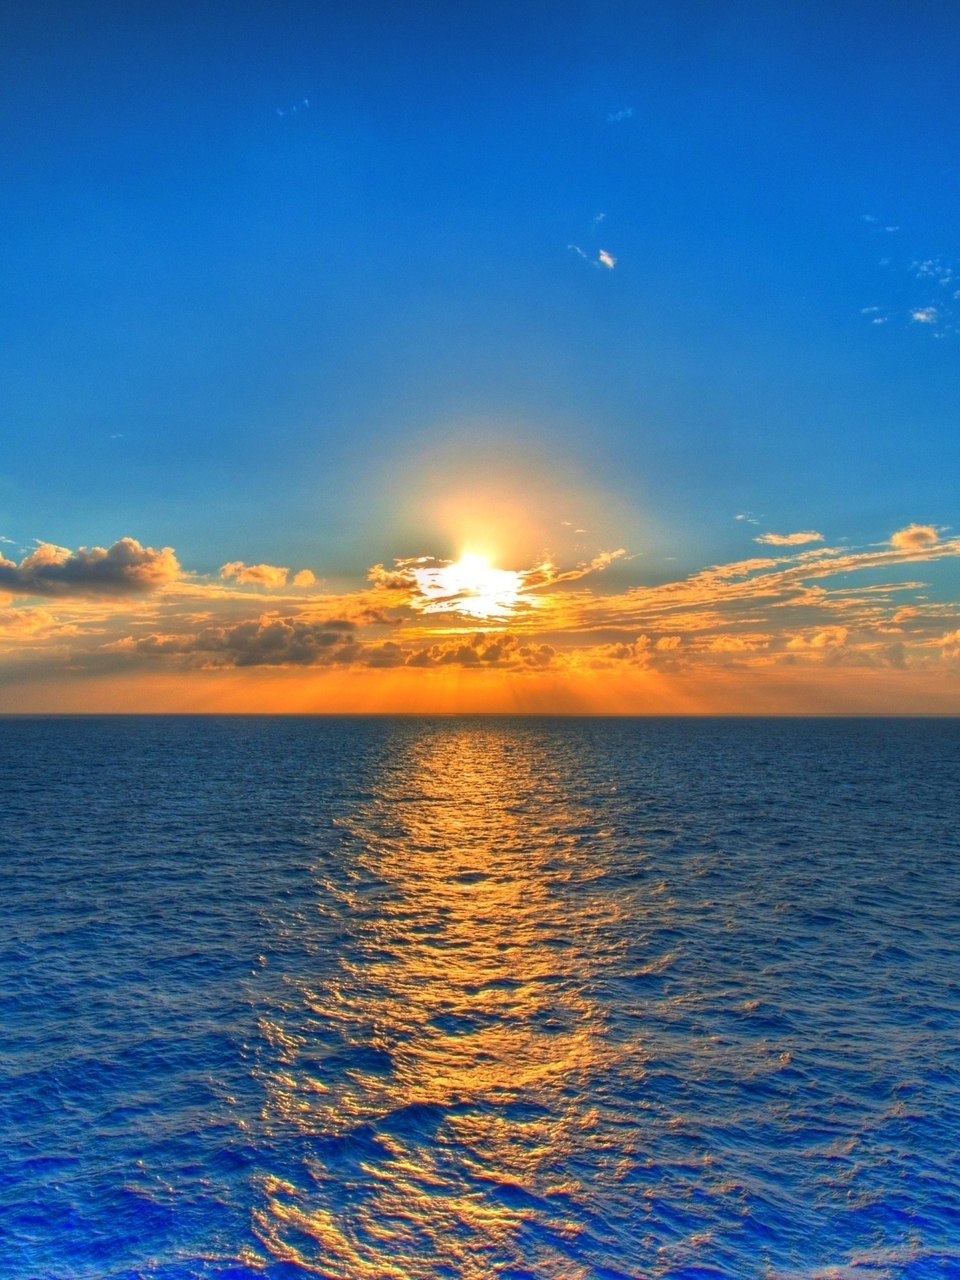 Image: Sun, sea, sky, clouds